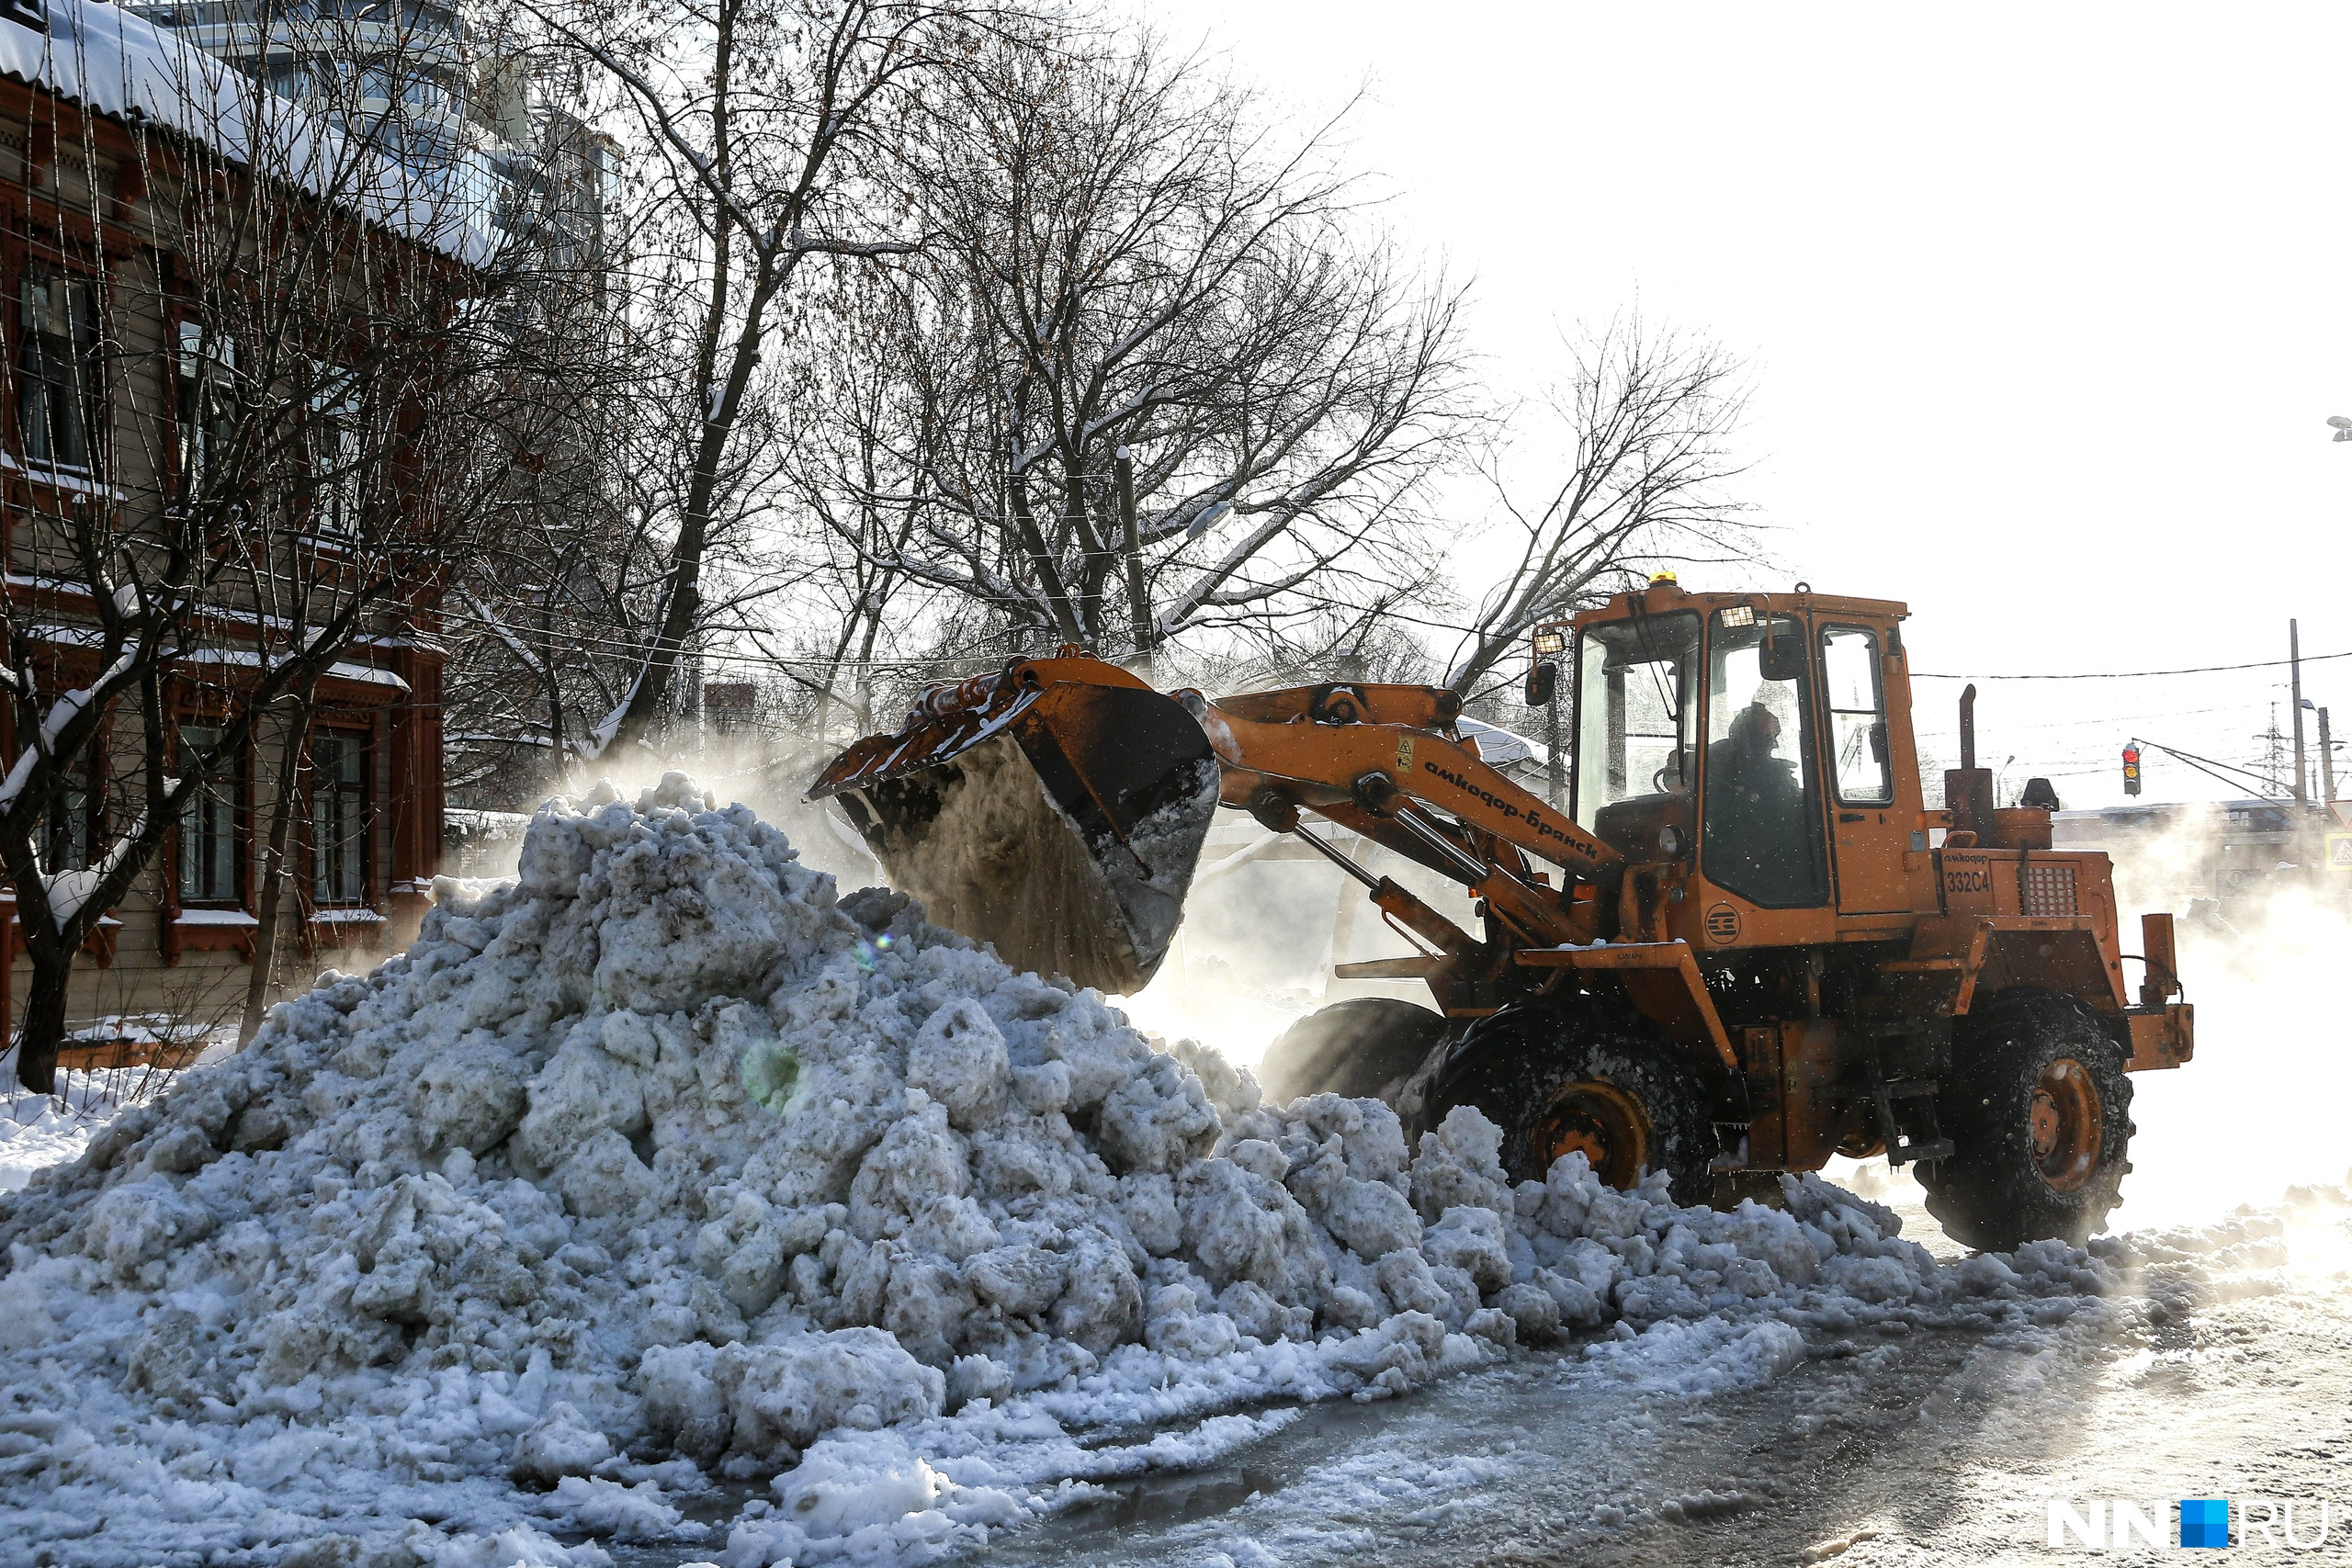 После прошедшего снегопада с улиц города вывезли еще далеко не весь снег, что здорово осложняло работу